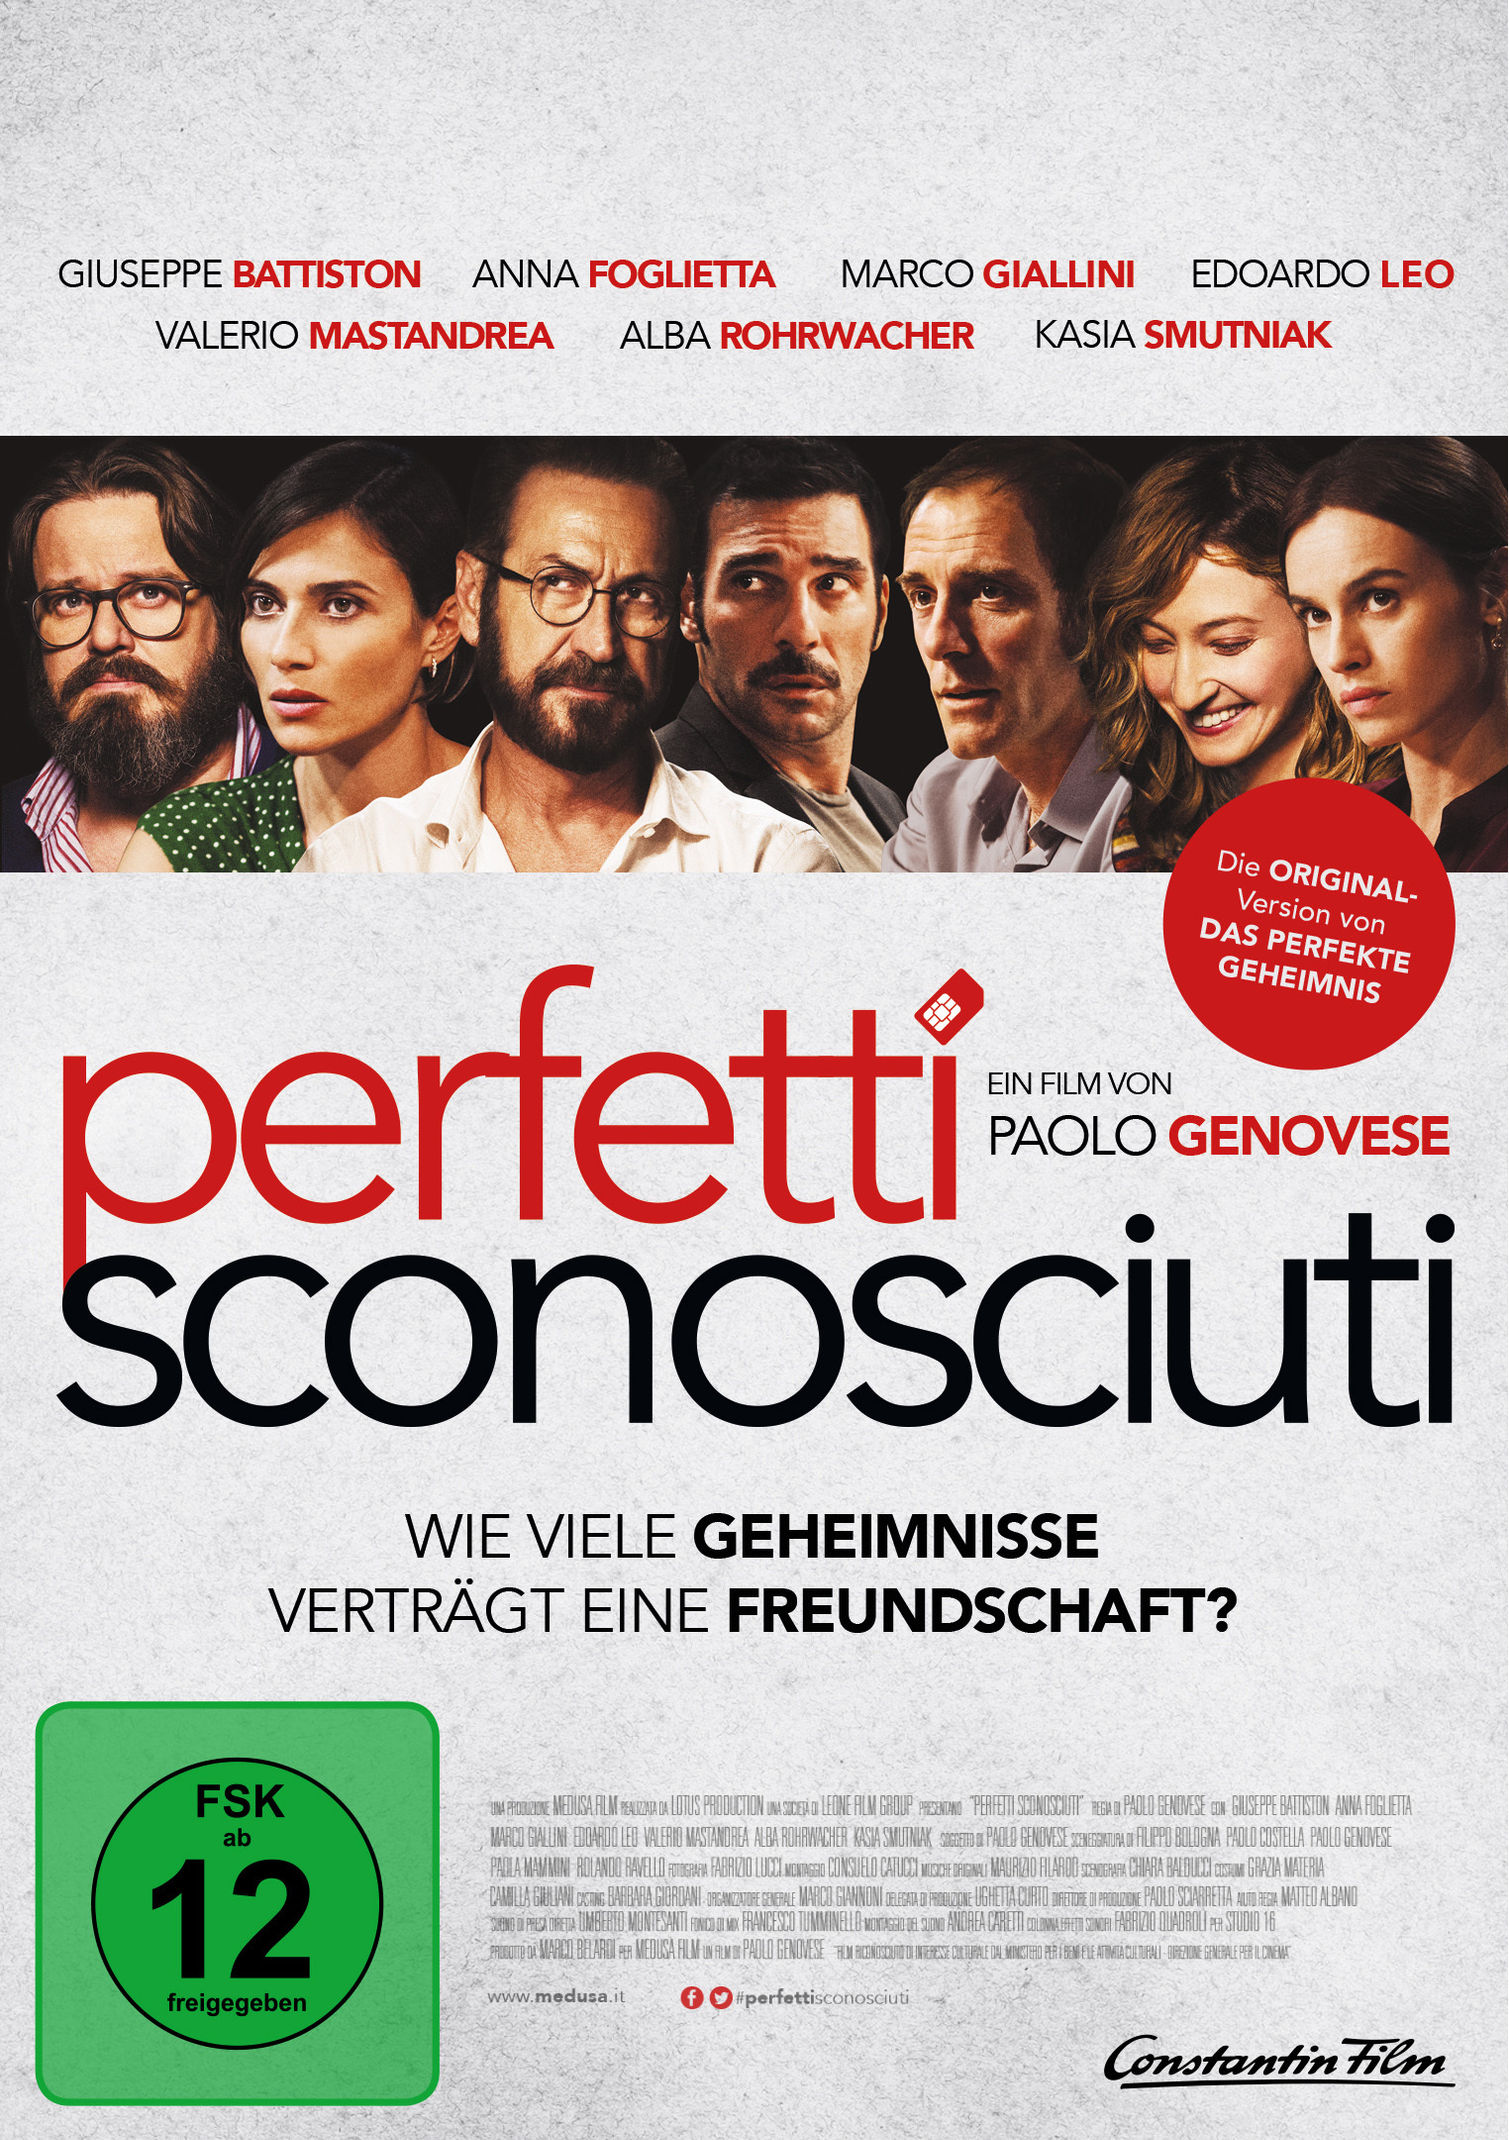 Perfetti Sconosciuti - Wie viele Geheimnisse verträgt eine Freundschaft?  Film | Weltbild.ch